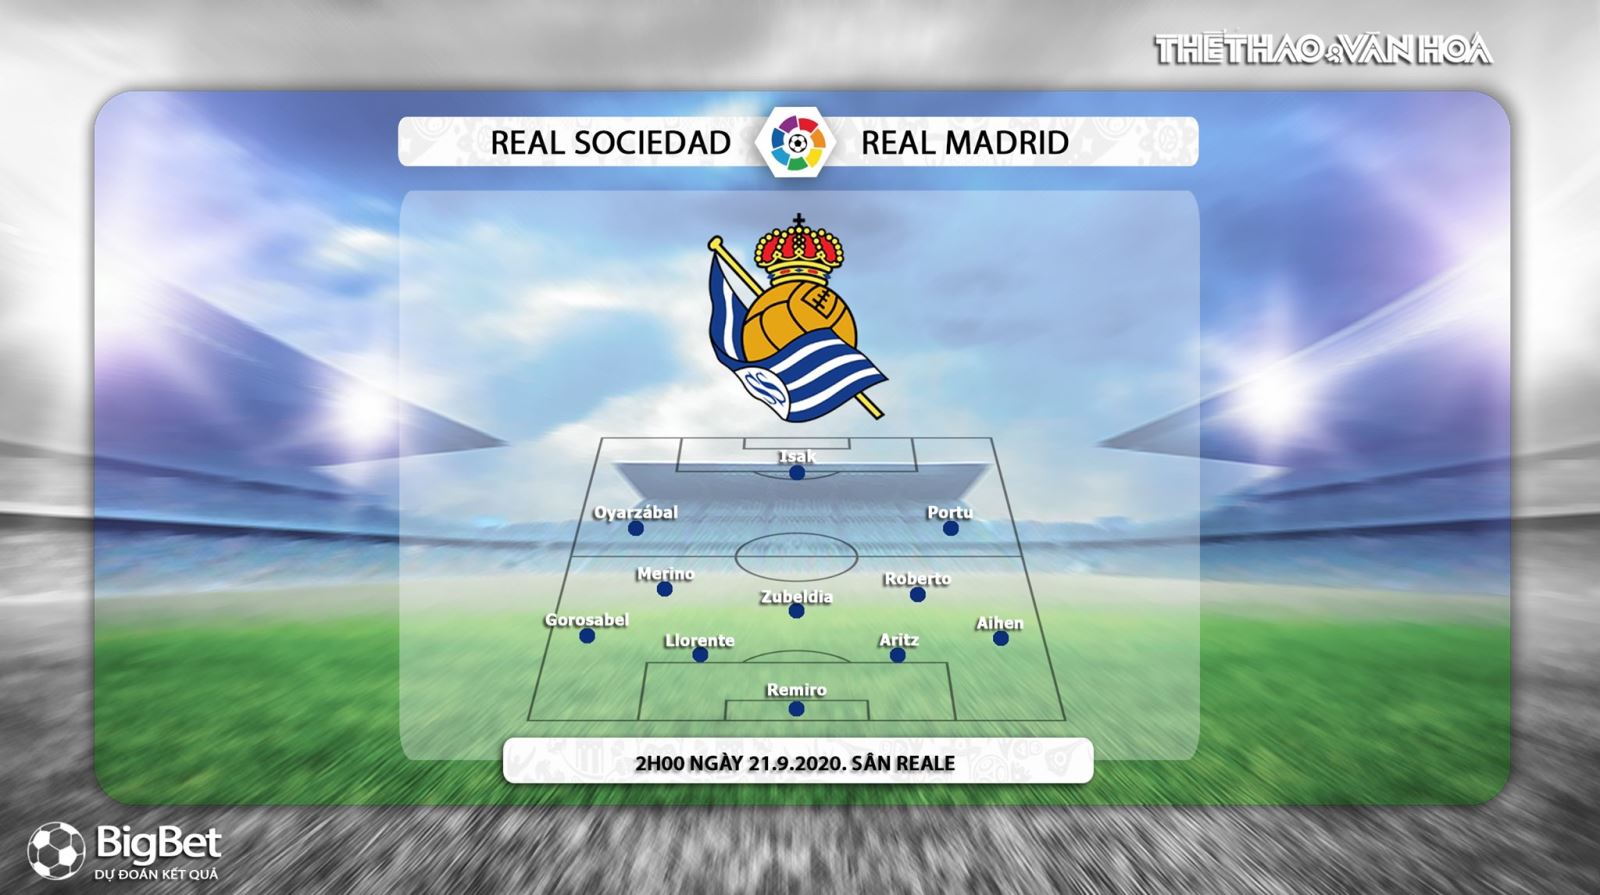 Real Sociedad vs Real Madrid, Real Sociedad, Real Madrid, nhận định bóng đá, kèo bóng đá, nhận định Real Sociedad vs Real Madrid, nhận định bóng đá bóng đá